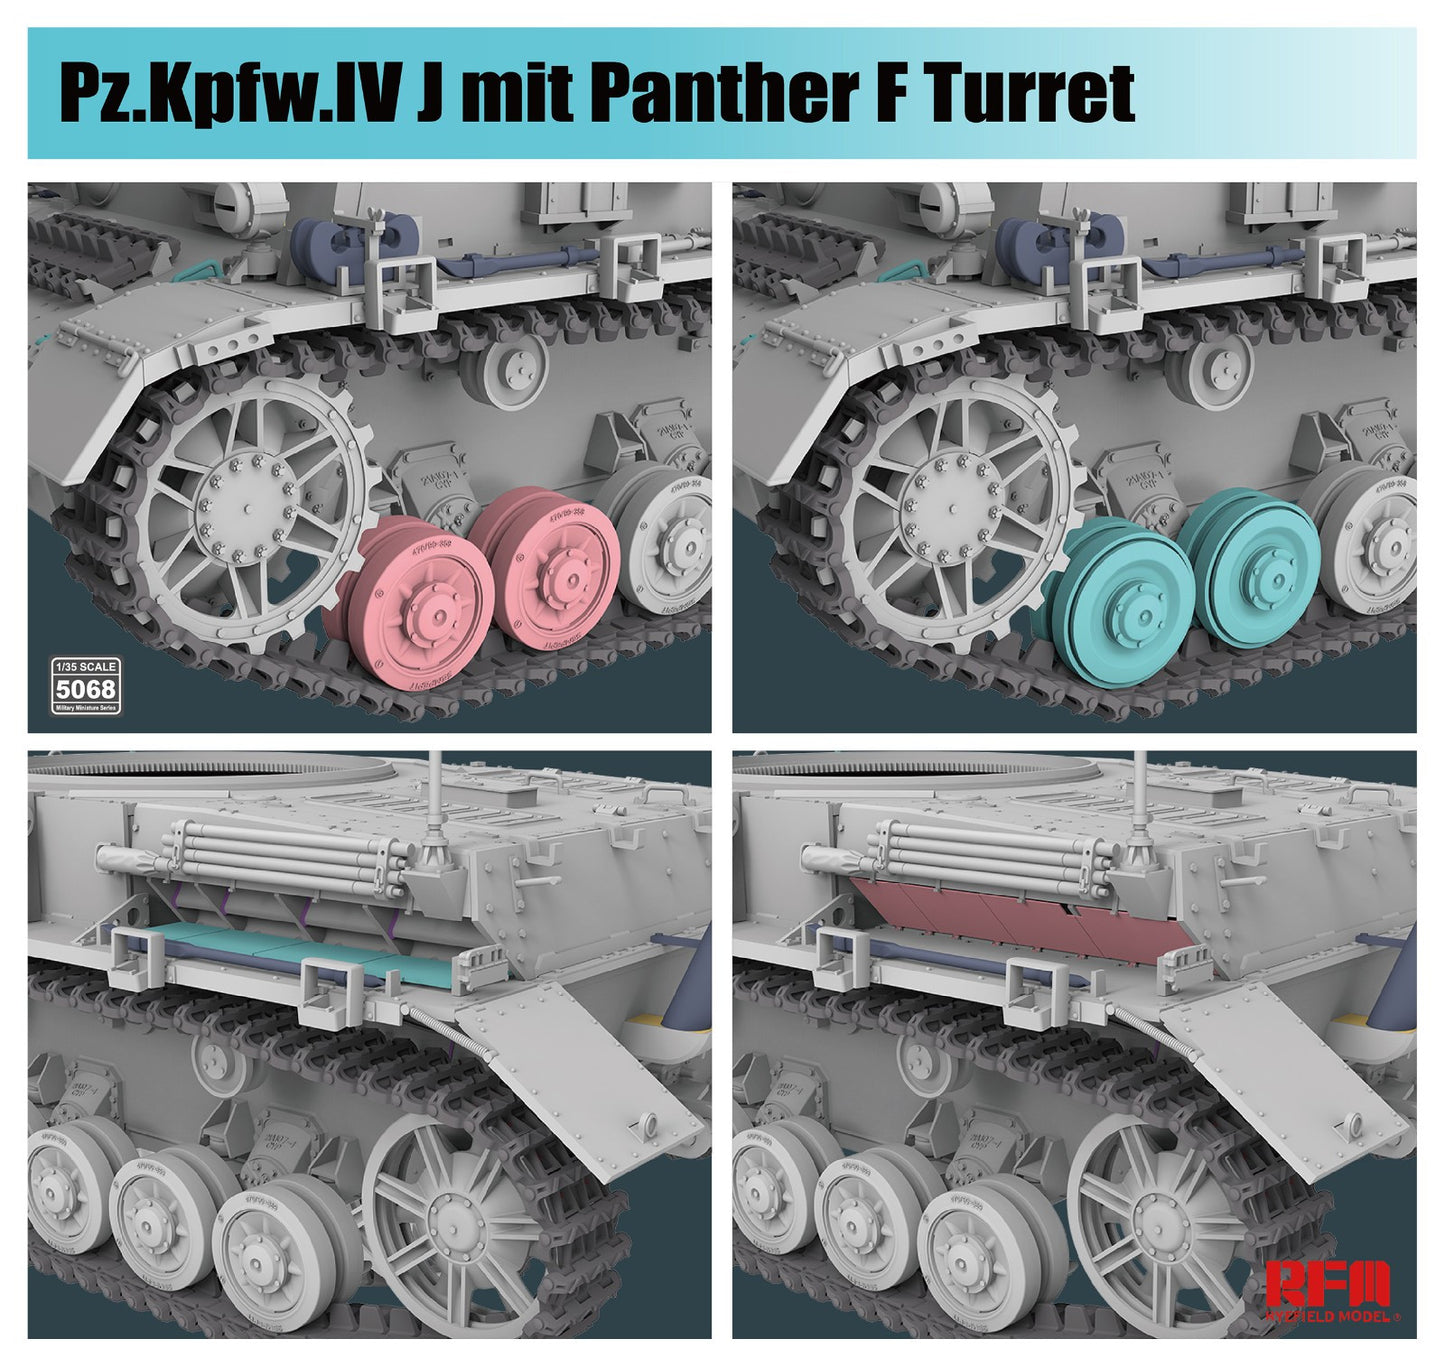 RyeField Model Pz.Kpfw.IV J mit Phanter F turret (RM5068)